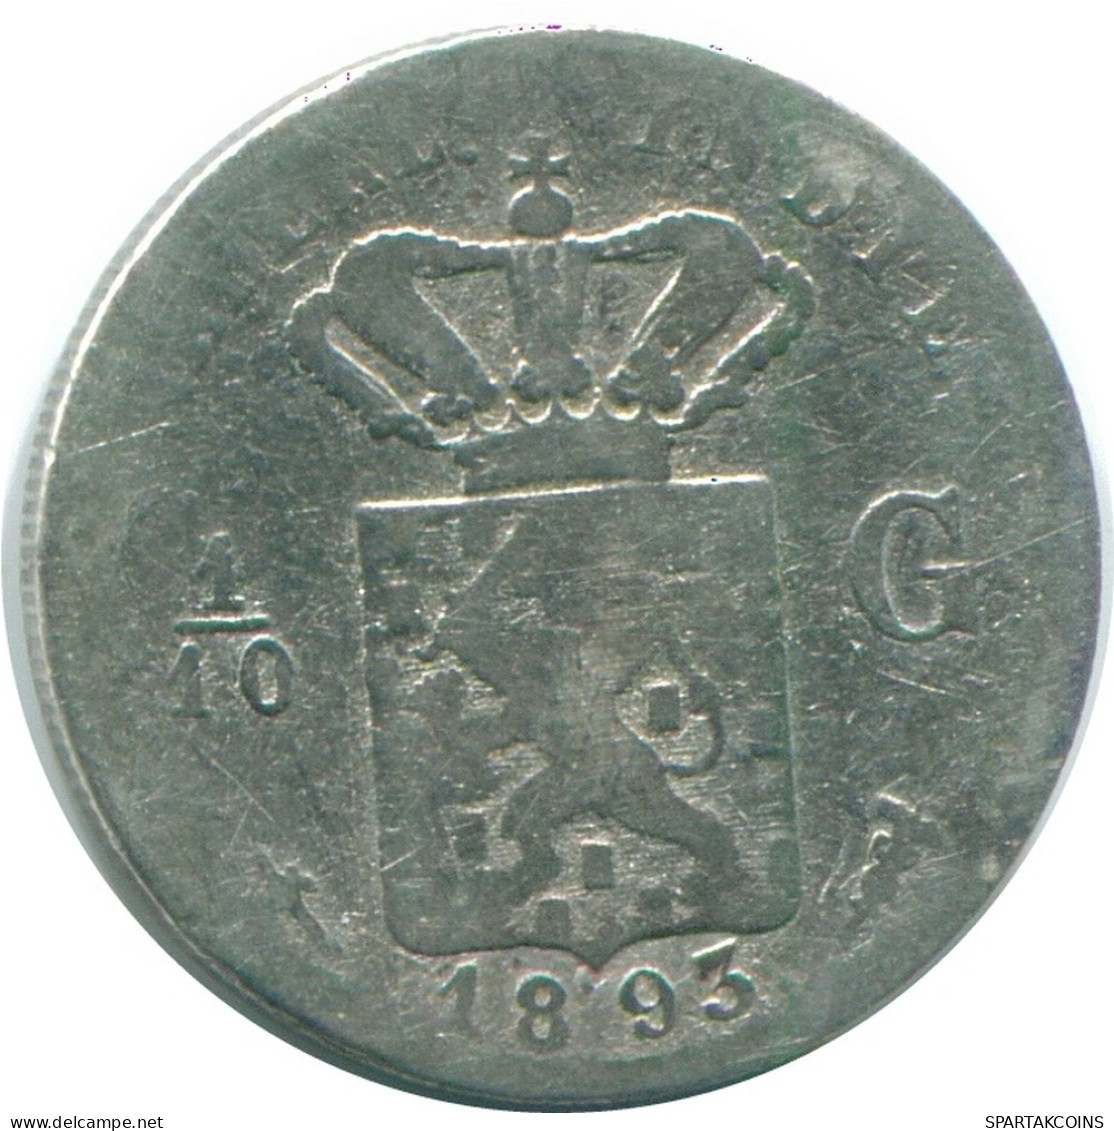 1/10 GULDEN 1893 NETHERLANDS EAST INDIES SILVER Colonial Coin #NL13196.3.U.A - Niederländisch-Indien